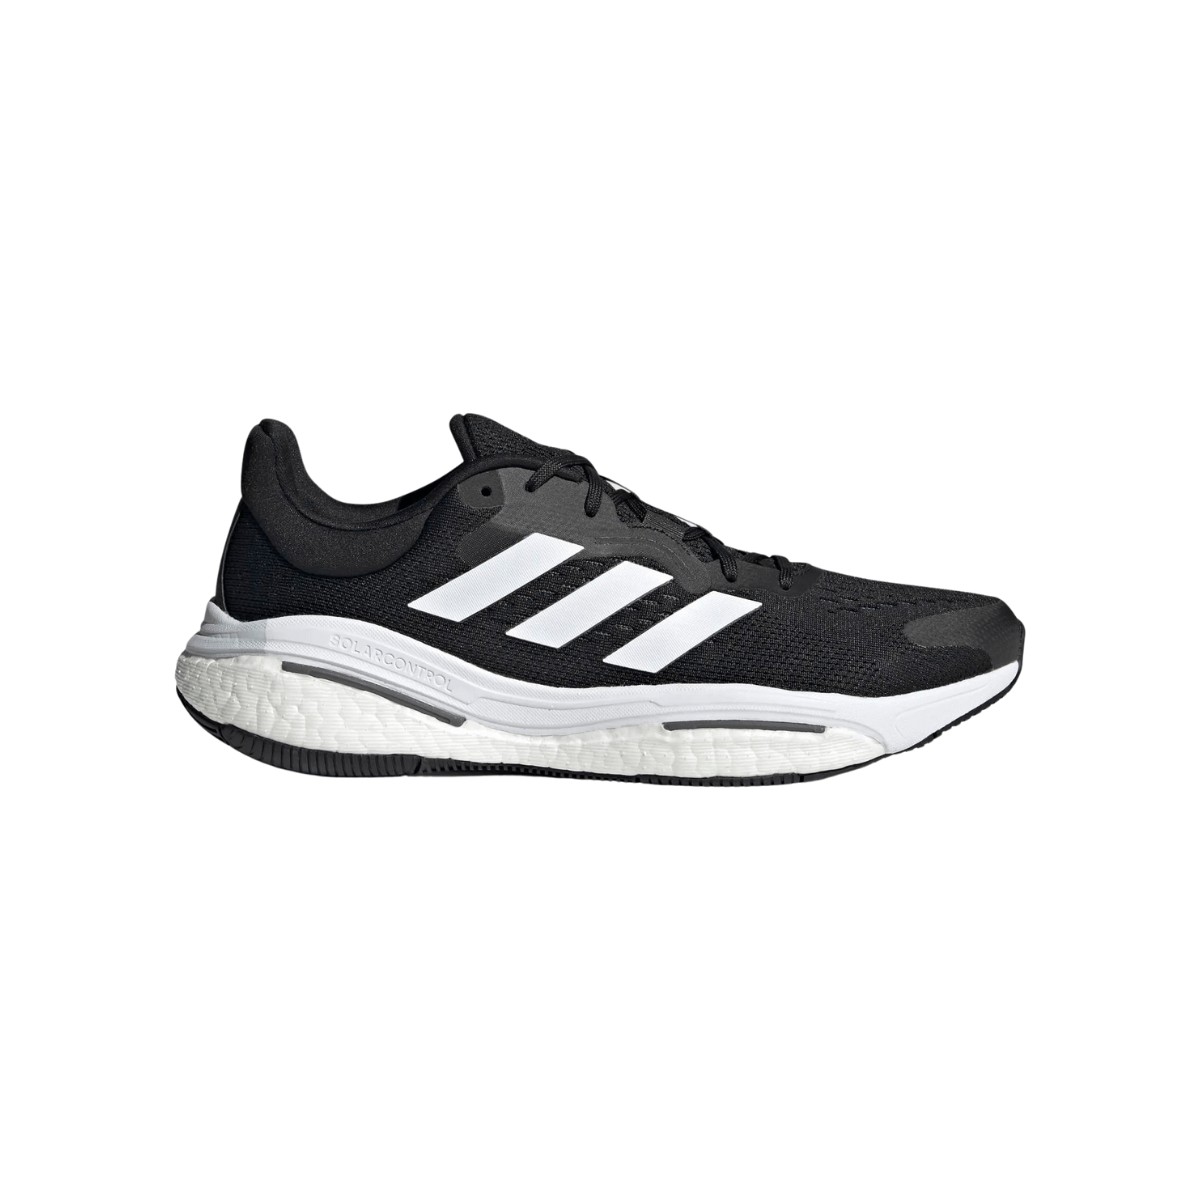 Adidas Solarcontrol Shoes Black White AW22, Size UK 7.5